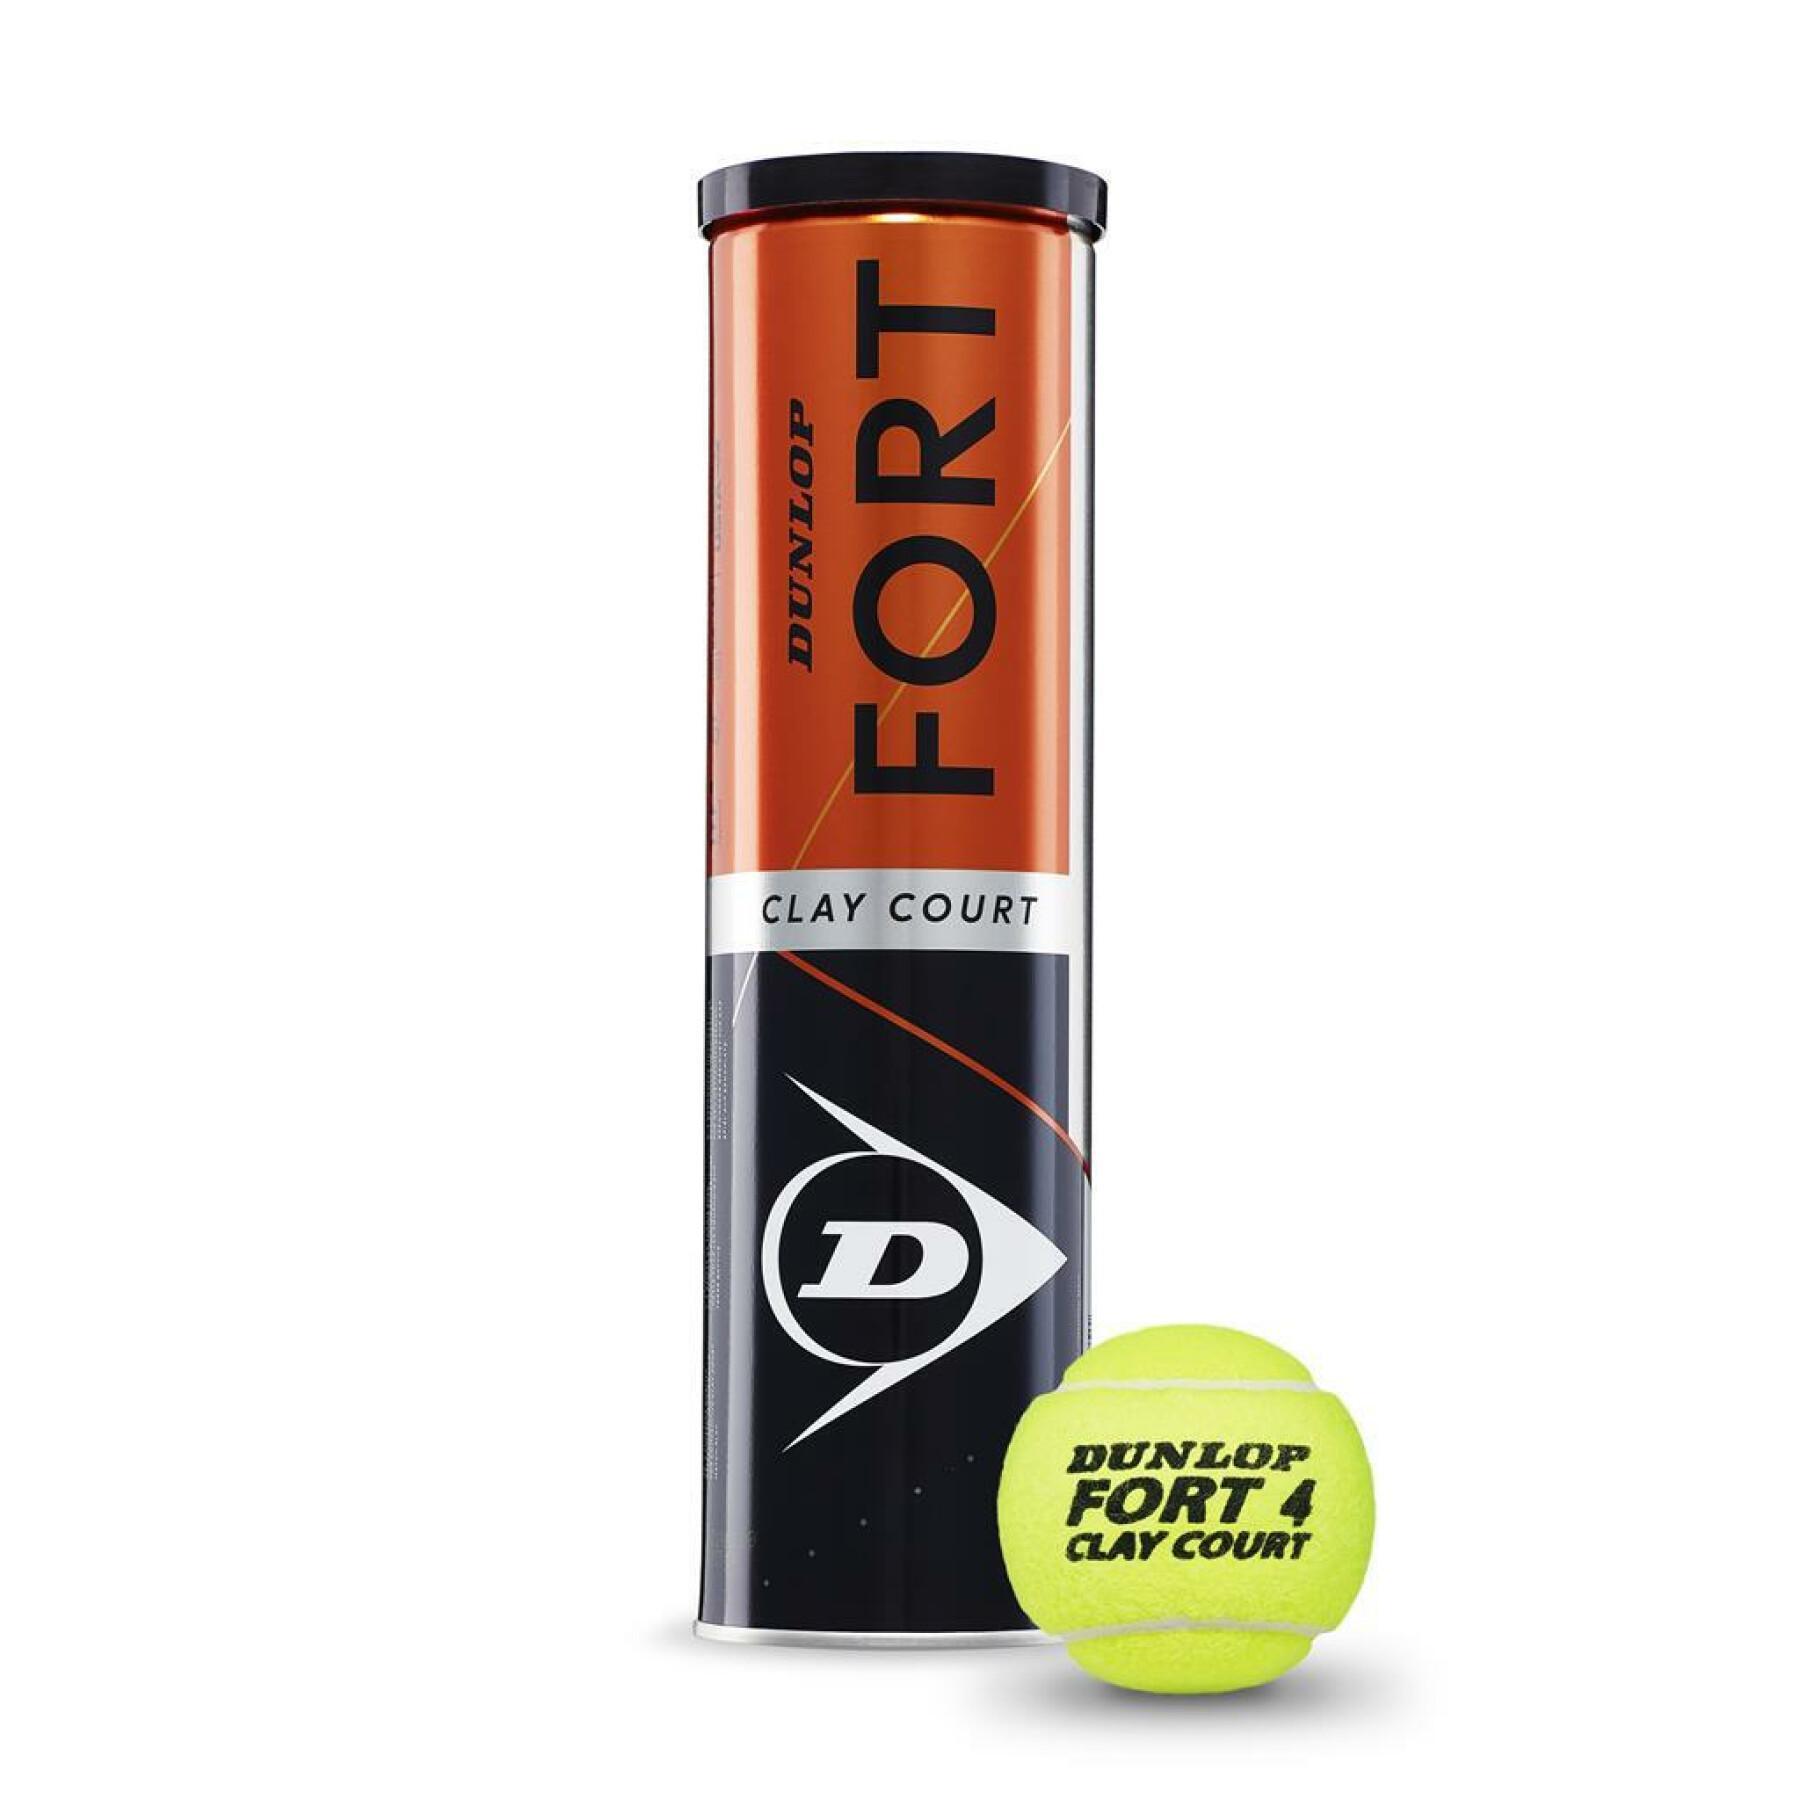 Set of 4 tennis balls Dunlop fort clay court 4tin